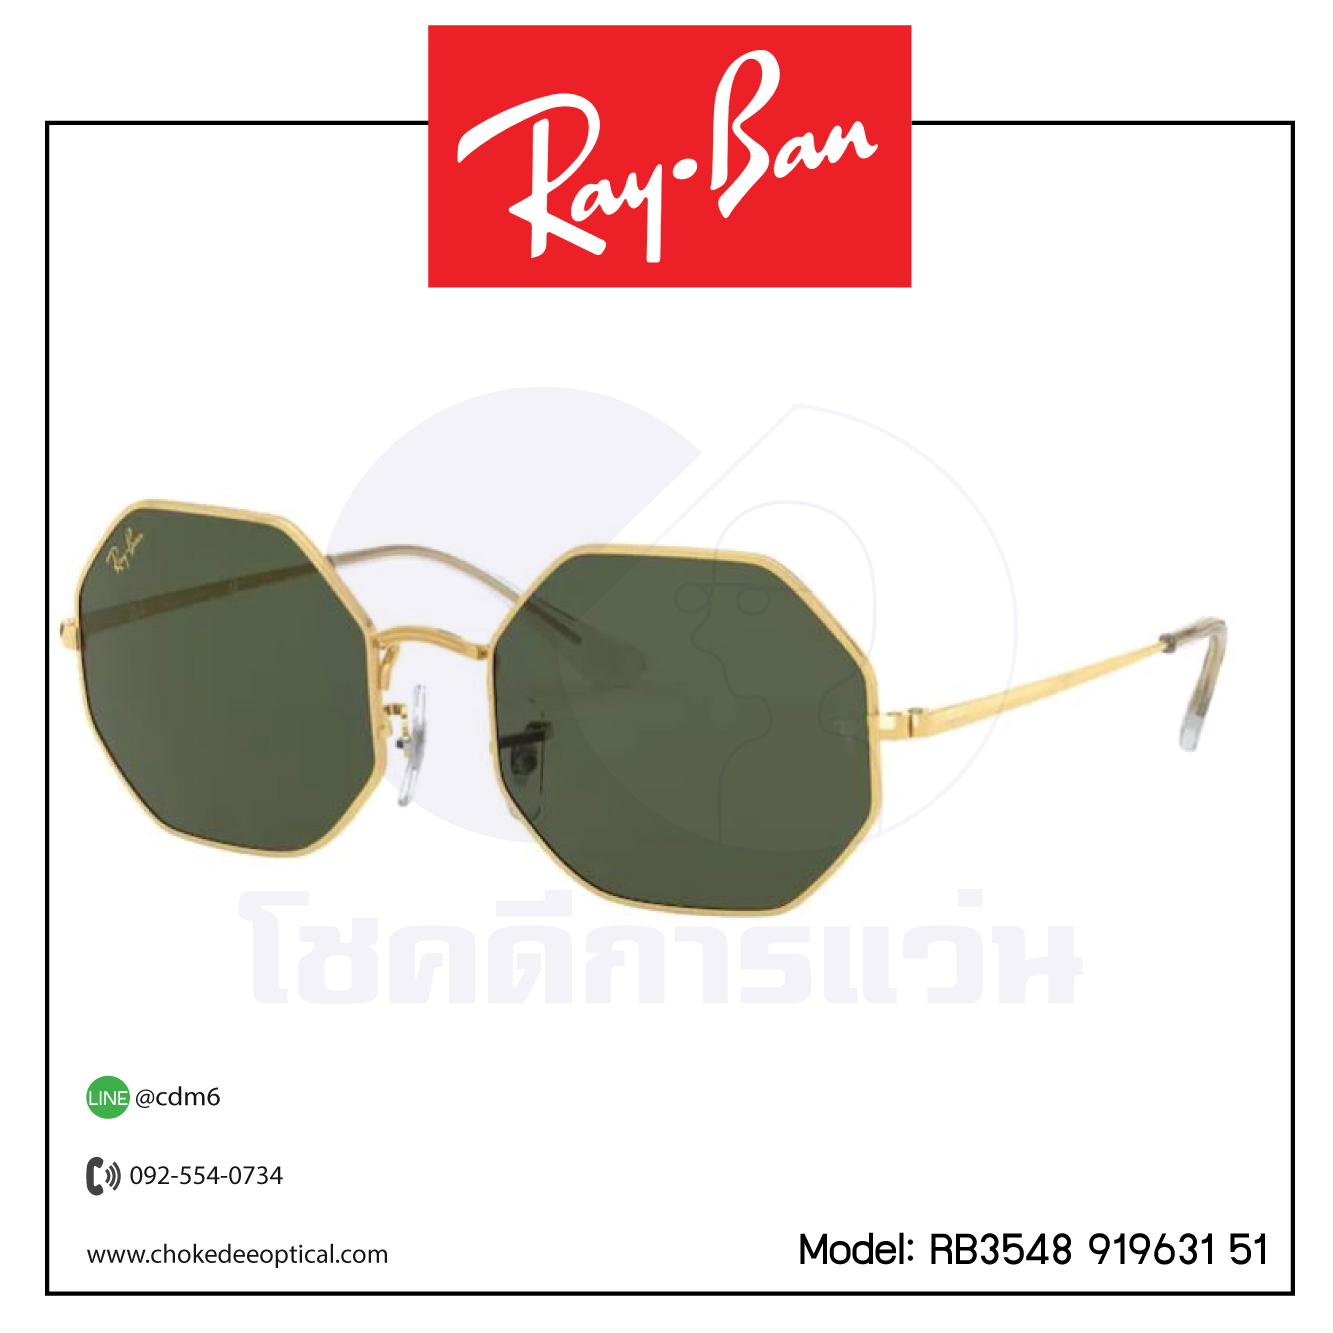 แว่นกันแดด Rayban RB1972 (919631 54/ 914931 54)